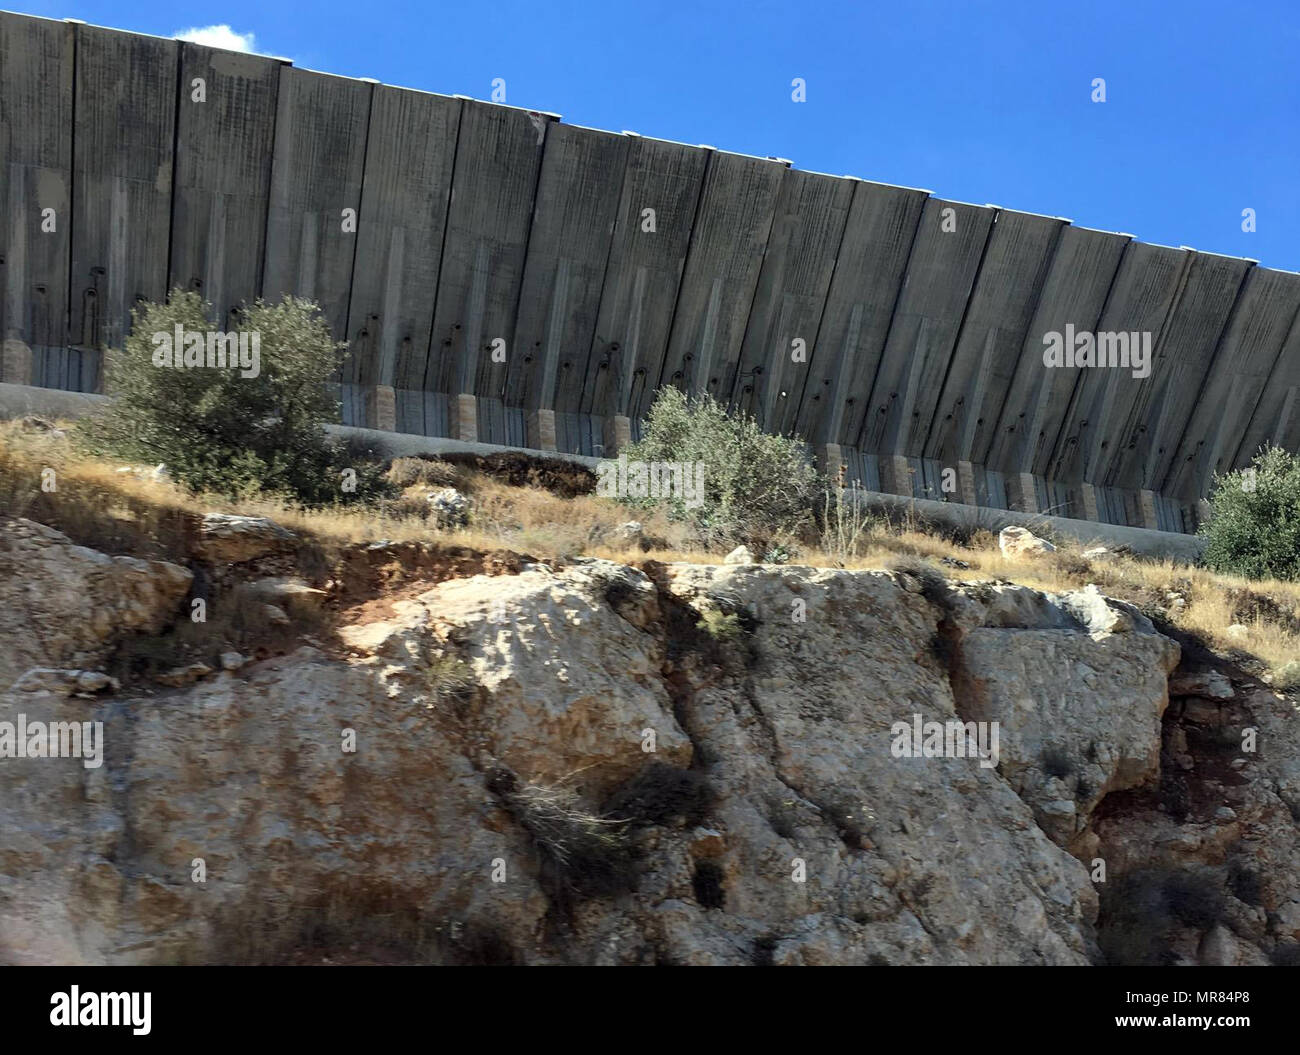 Die Israelischen West Bank Barrier oder Wand ist eine trennmauer im Westjordanland oder entlang der Grünen Linie. Israel hält es eine Sicherheitsbarriere gegen den Terrorismus, während die Palästinenser eine Segregation oder die Apartheidmauer. Die Barriere wurde während der zweiten Intifada, die im September 2000 begonnen und wurde von der israelischen Regierung verteidigt, wie erforderlich sind, um die Welle der Gewalt in Israel, dass der Aufstand mit sich gebracht hatte zu stoppen Stockfoto